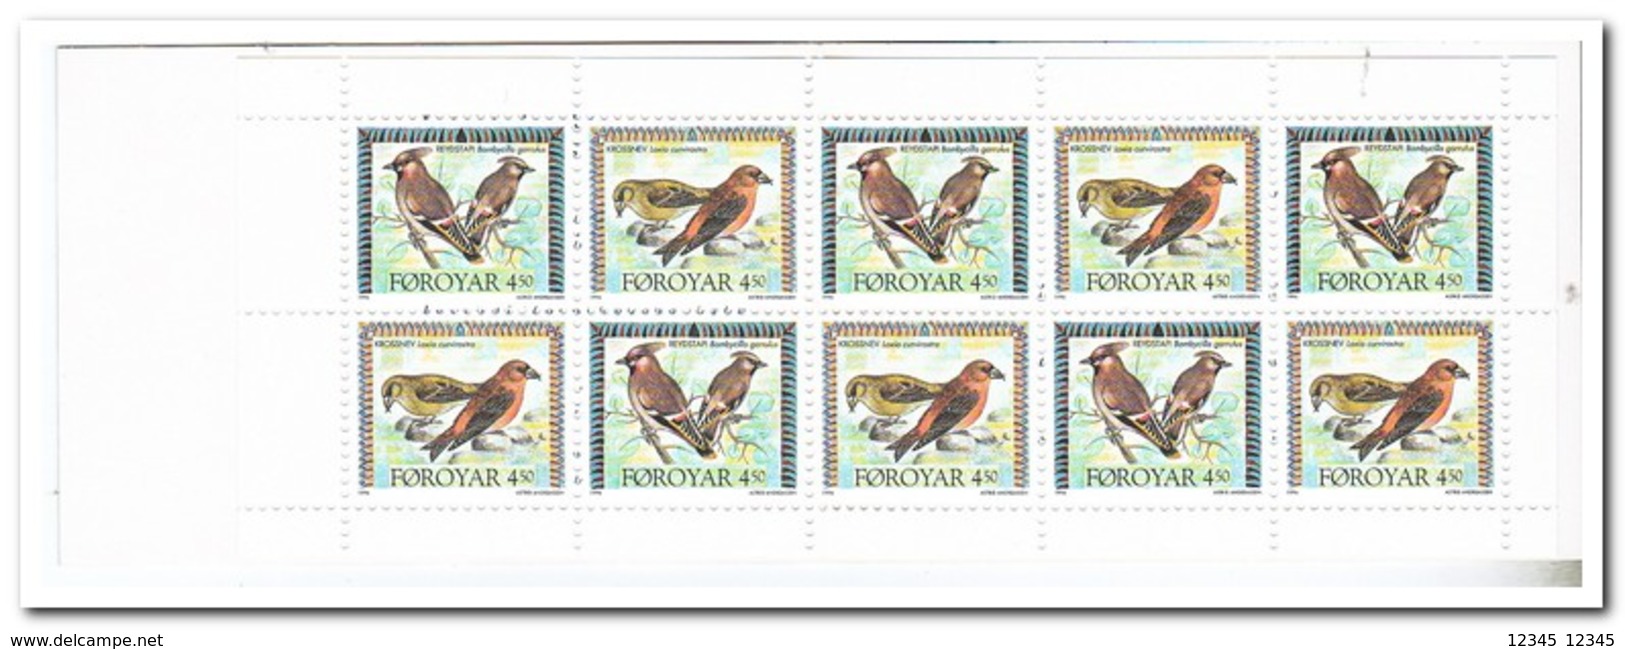 Faroer 1996, Postfris MNH, Birds ( Booklet, Carnet ) - Faroe Islands